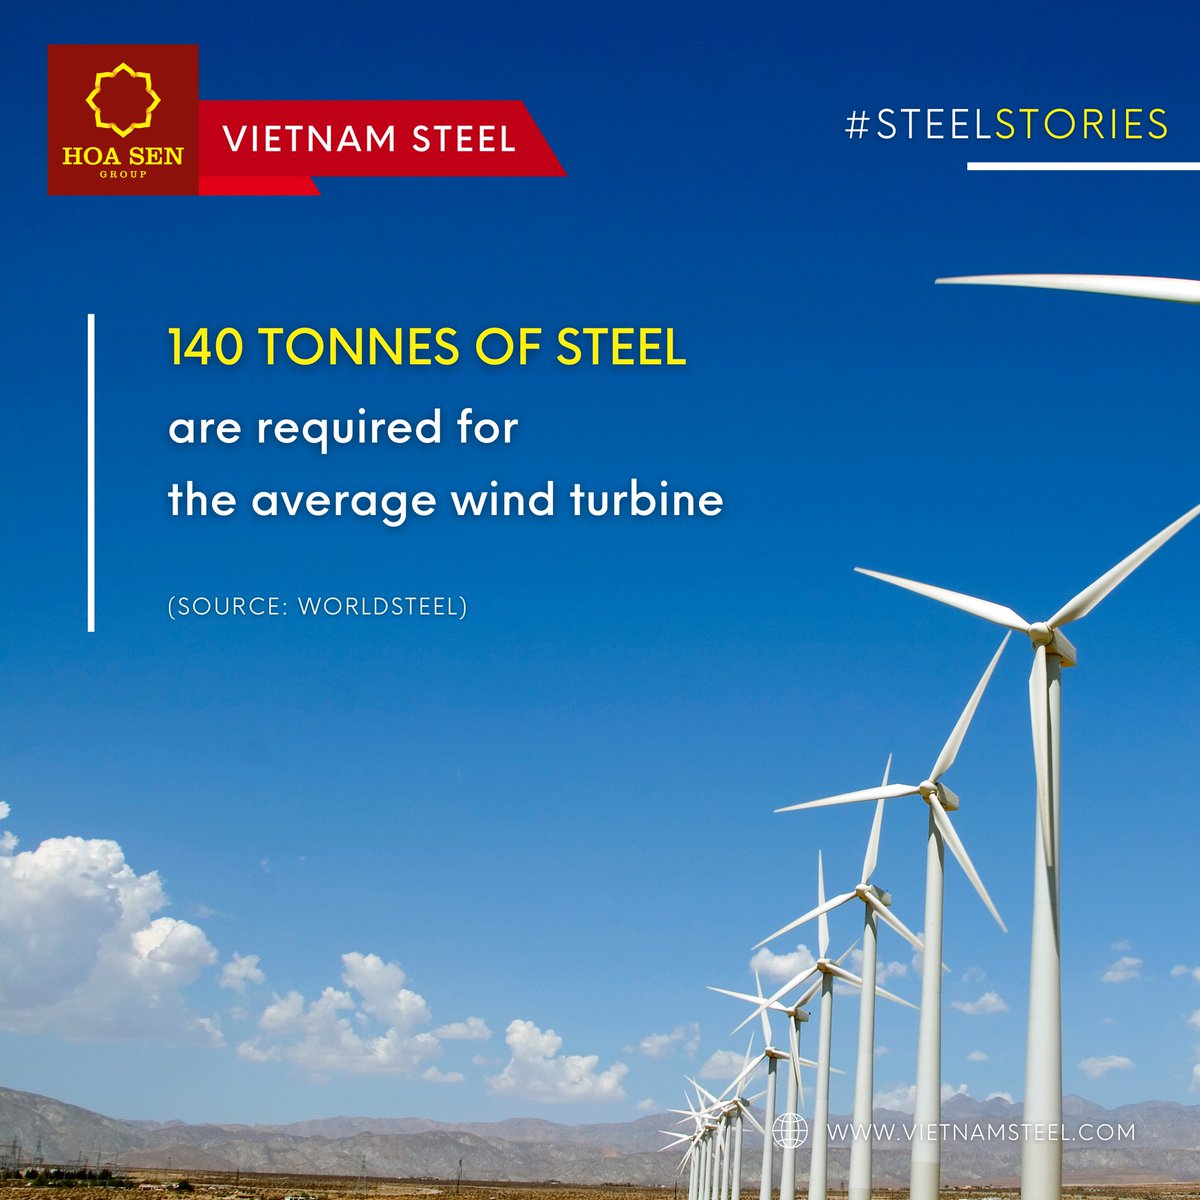 ⚜️ 140 tonnes of steel are required for the average wind turbine. 
----
Website: vietnamsteel.com

#steelexport #vietnamsteel #hoasengroup #steelasia #steelimport #hsg #steelsheet #steelpipe #plasticpipe #steelfacts #steelexport